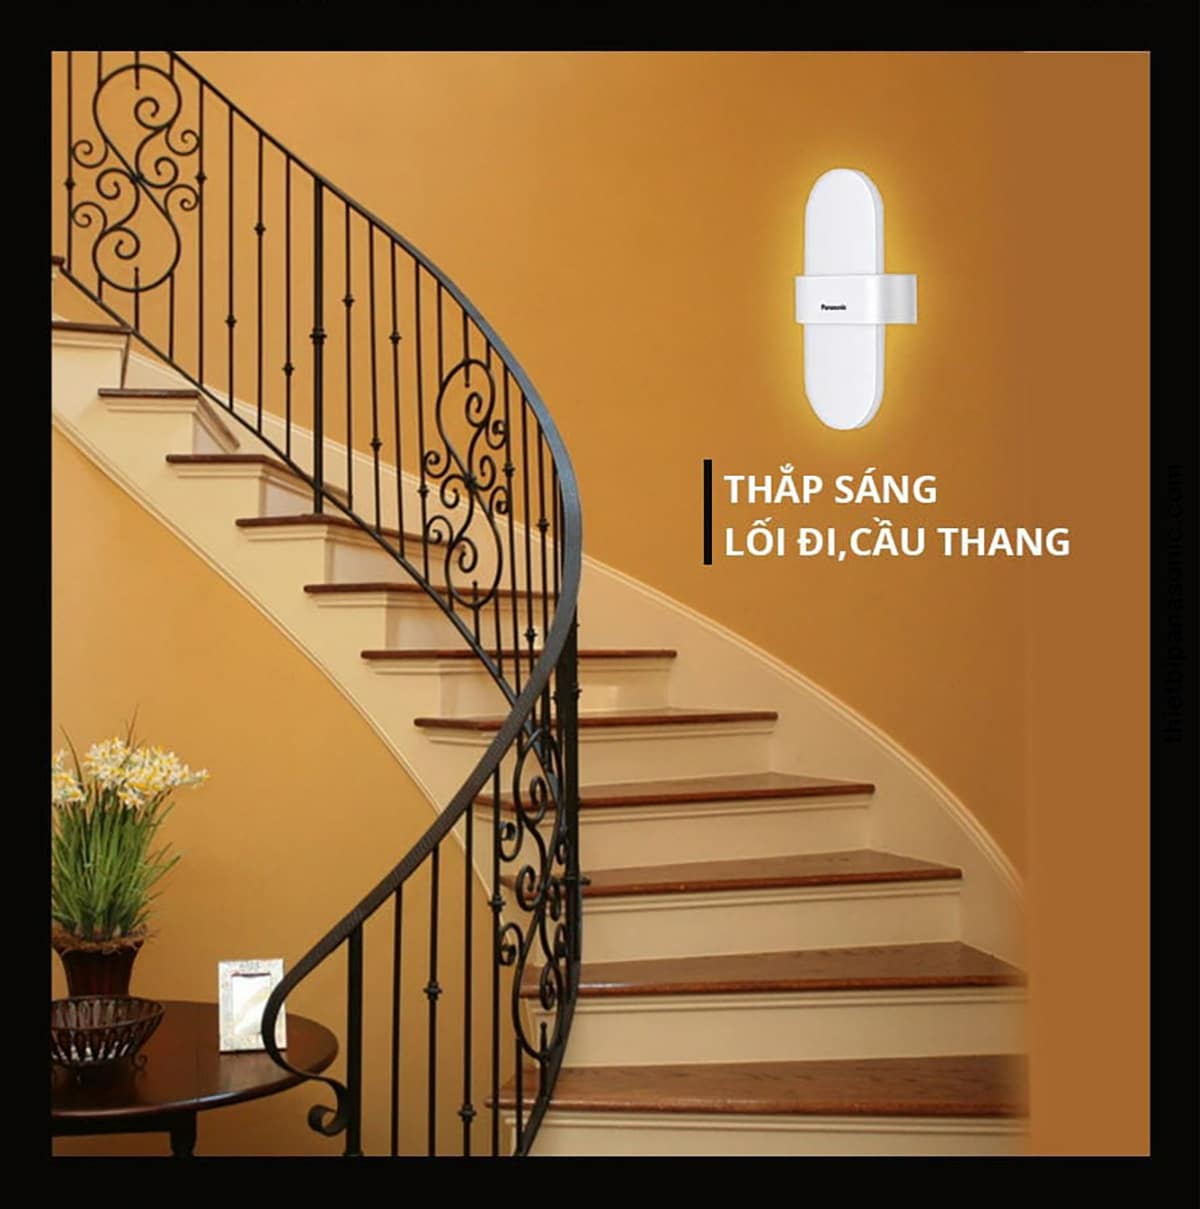 Ứng dụng của Đèn gắn tường HHBQ100688 trong thắp sáng lối đi và cầu thang